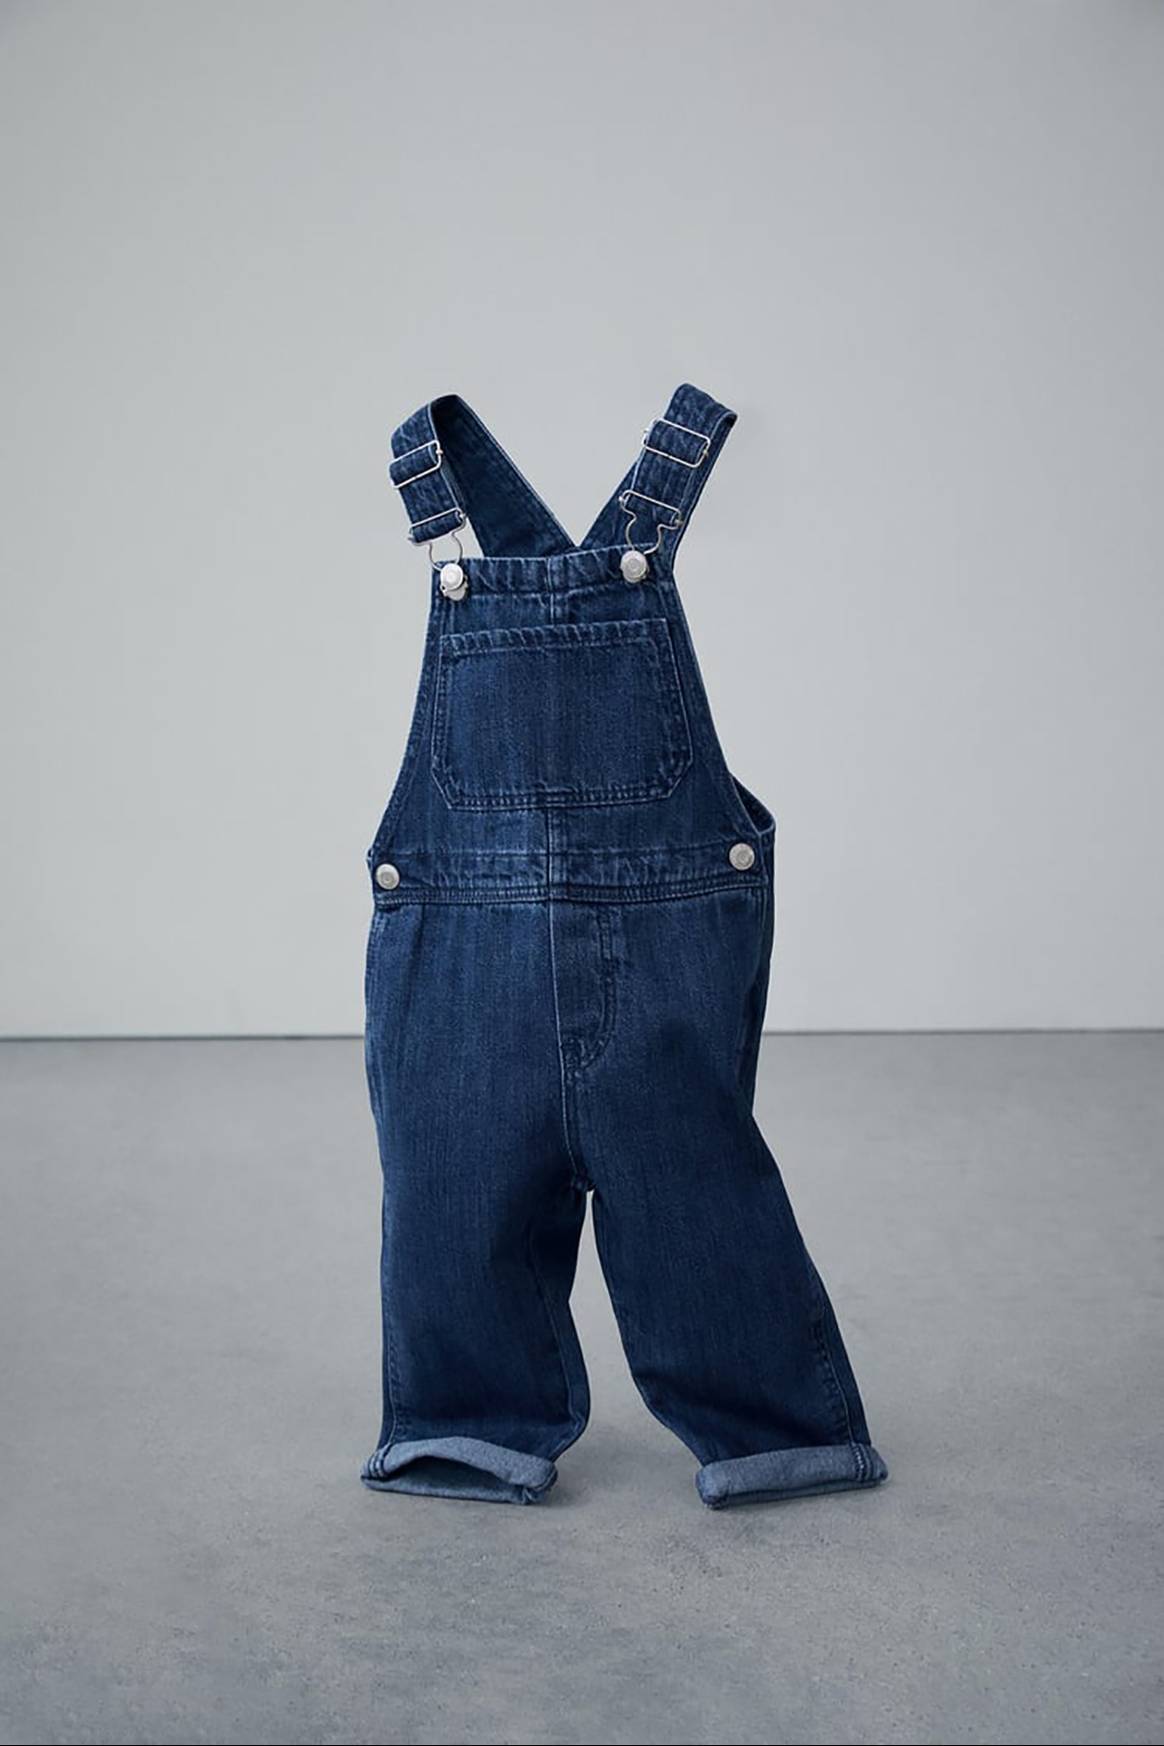 Photo Credits: The Jeans Redesign X Zara, colección cápsula de moda infantil enfocada a la circularidad.